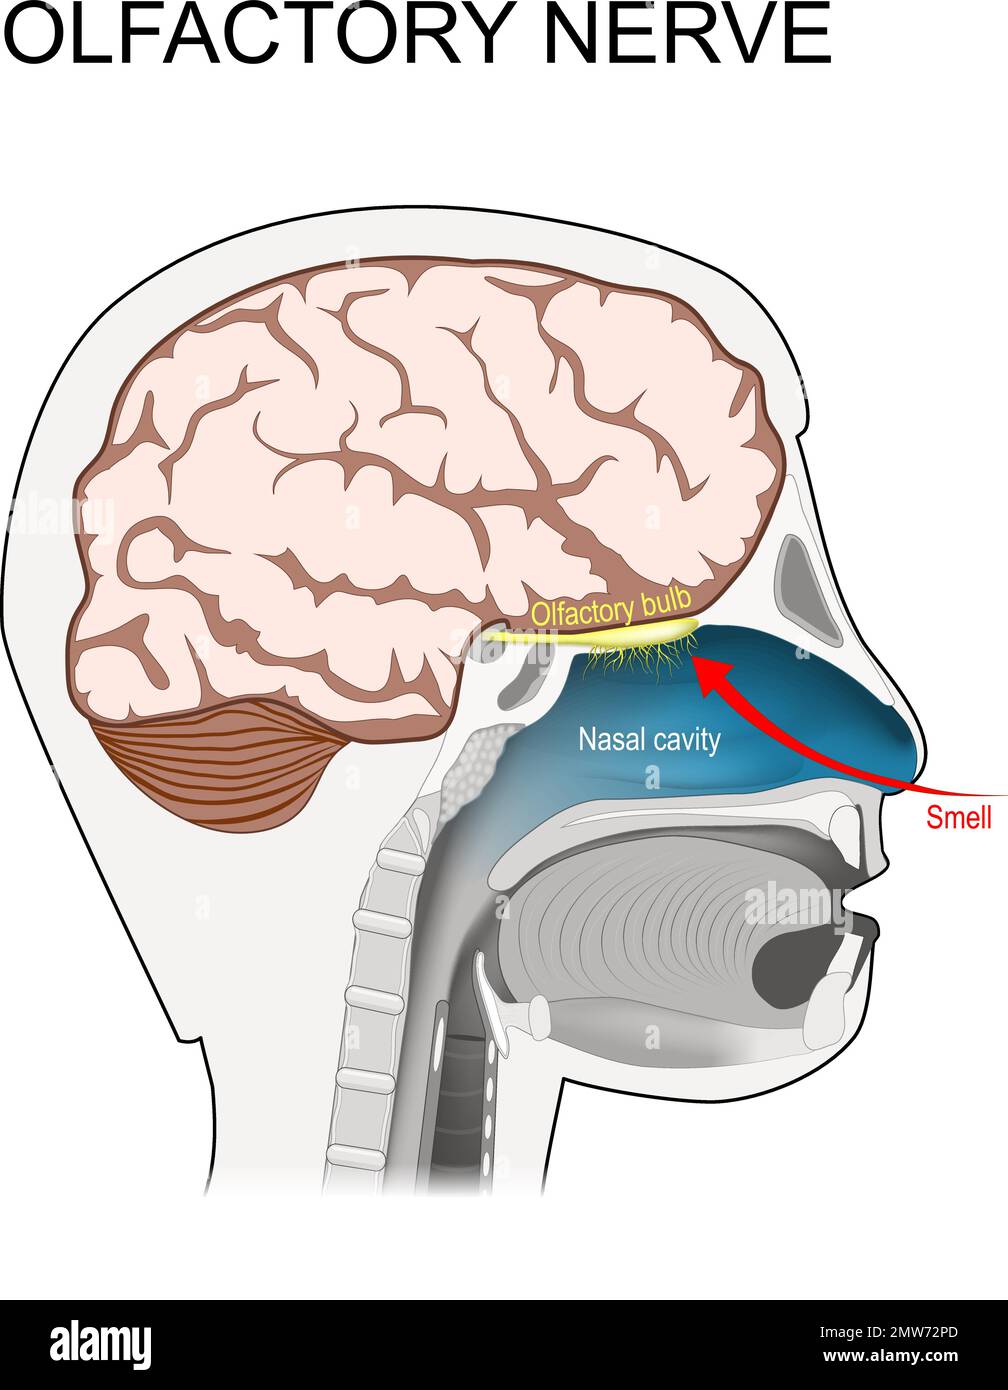 nerf olfactif. emplacement du premier nerf crânien. Coupe transversale d'une tête humaine avec le cerveau, la cavité nasale, le bulbe olfactif et les récepteurs d'odeur Illustration de Vecteur